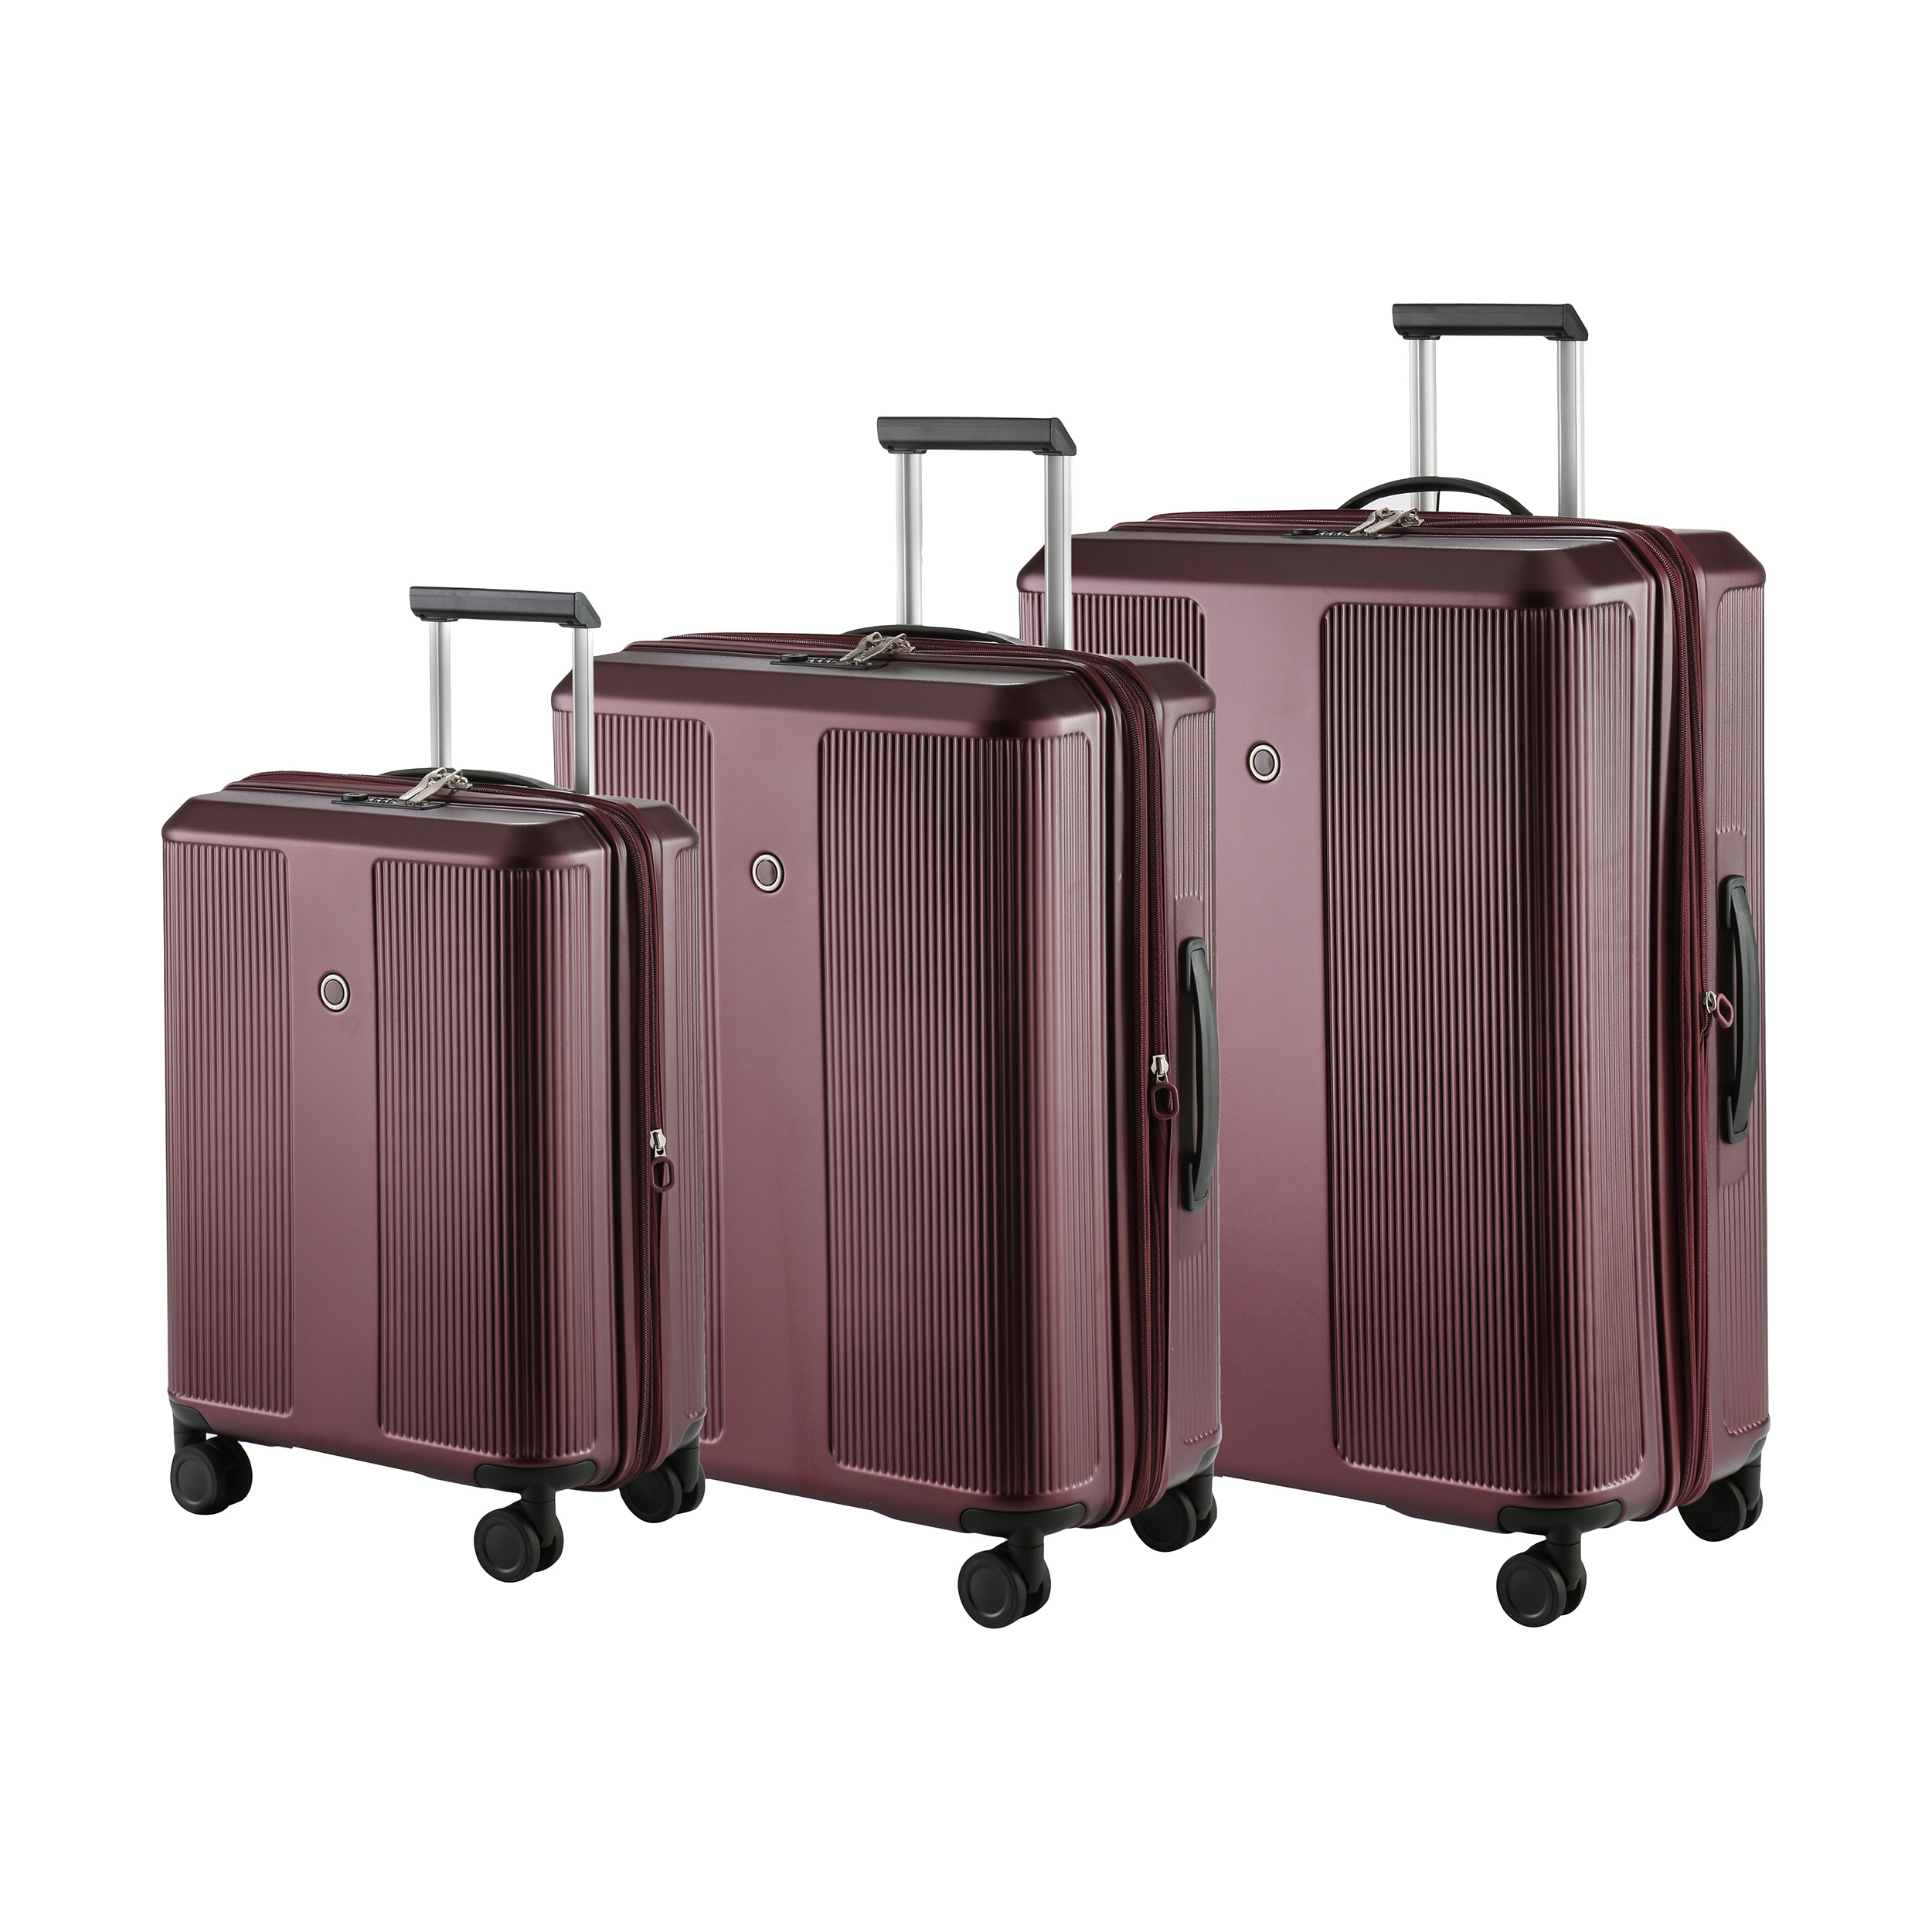 چمدان اکولاک مدل Prise مجموعه سه عددی